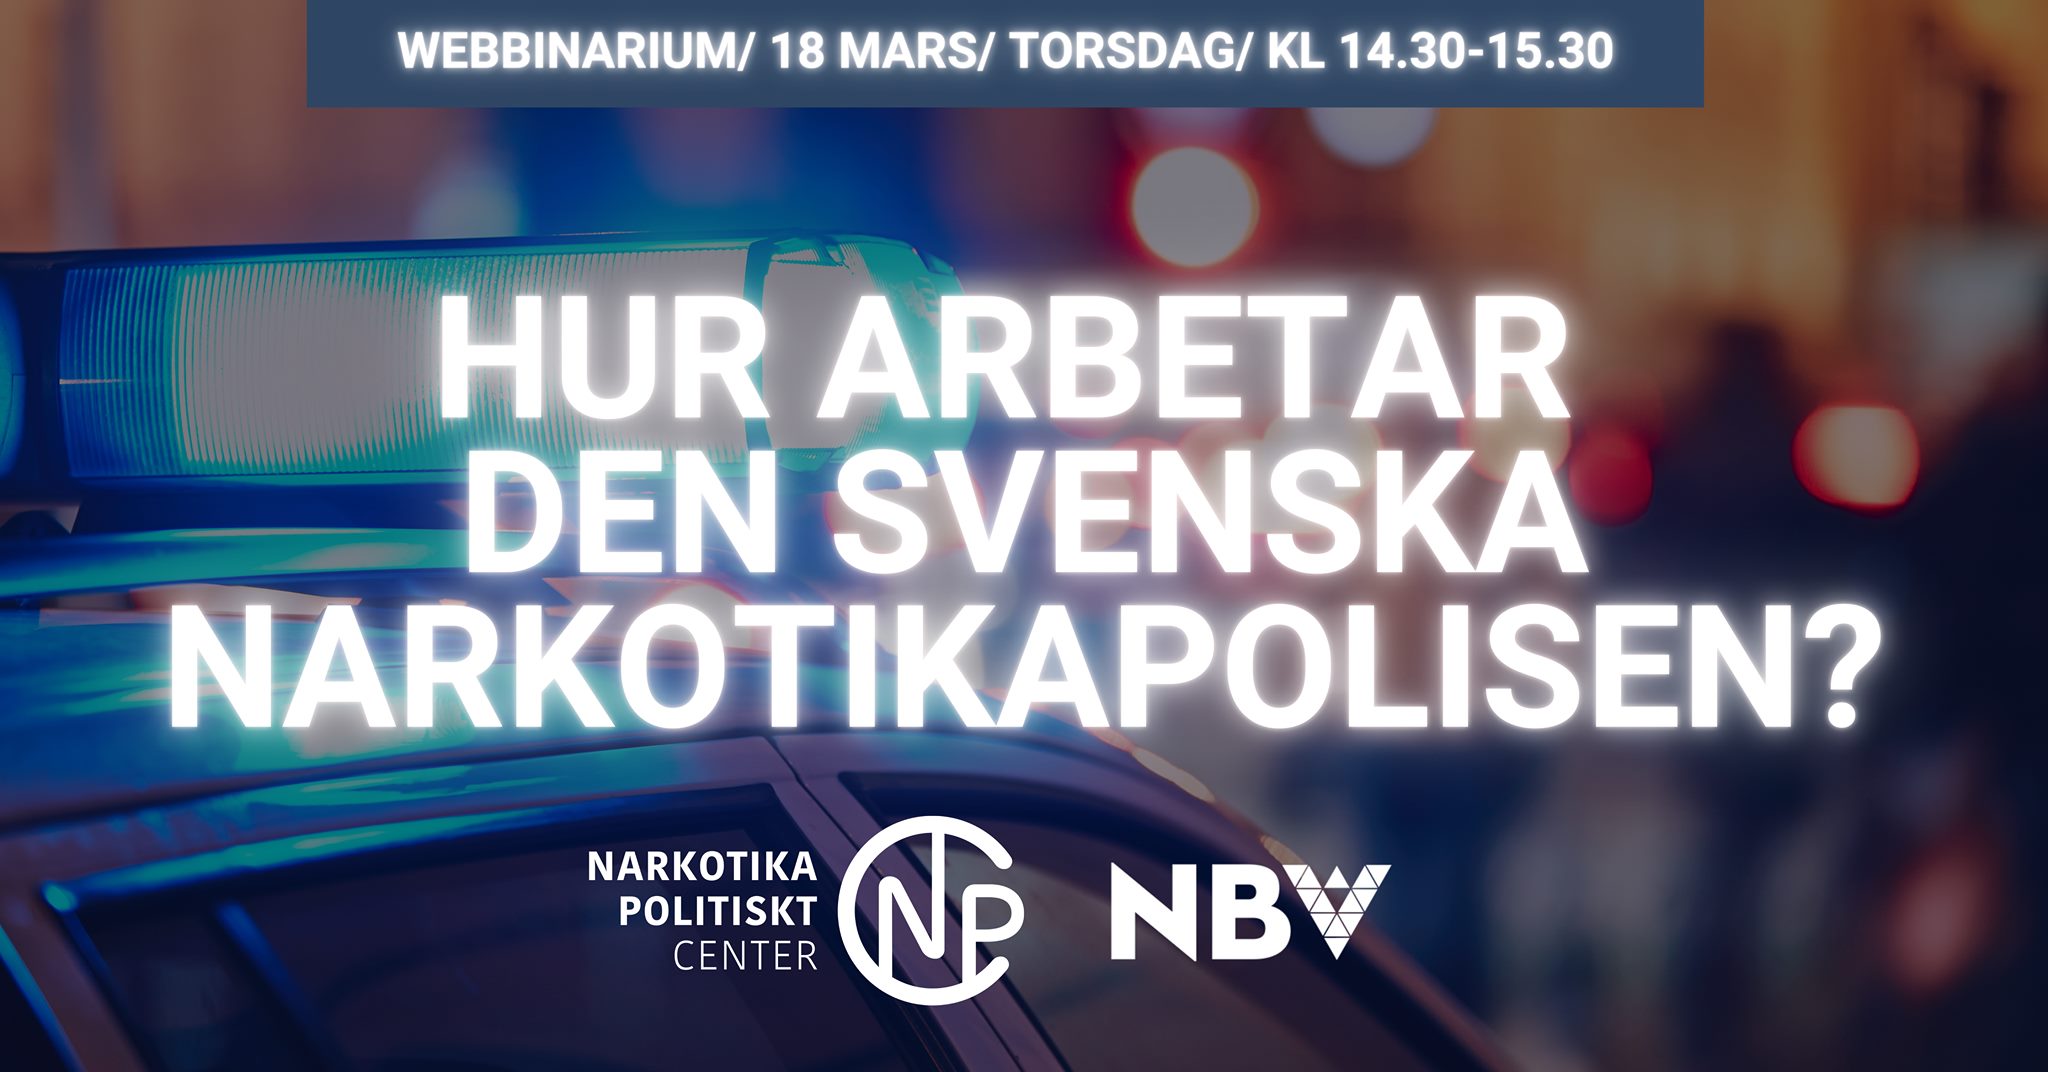 Webbinarium 18 mars: Hur arbetar den svenska narkotikapolisen?